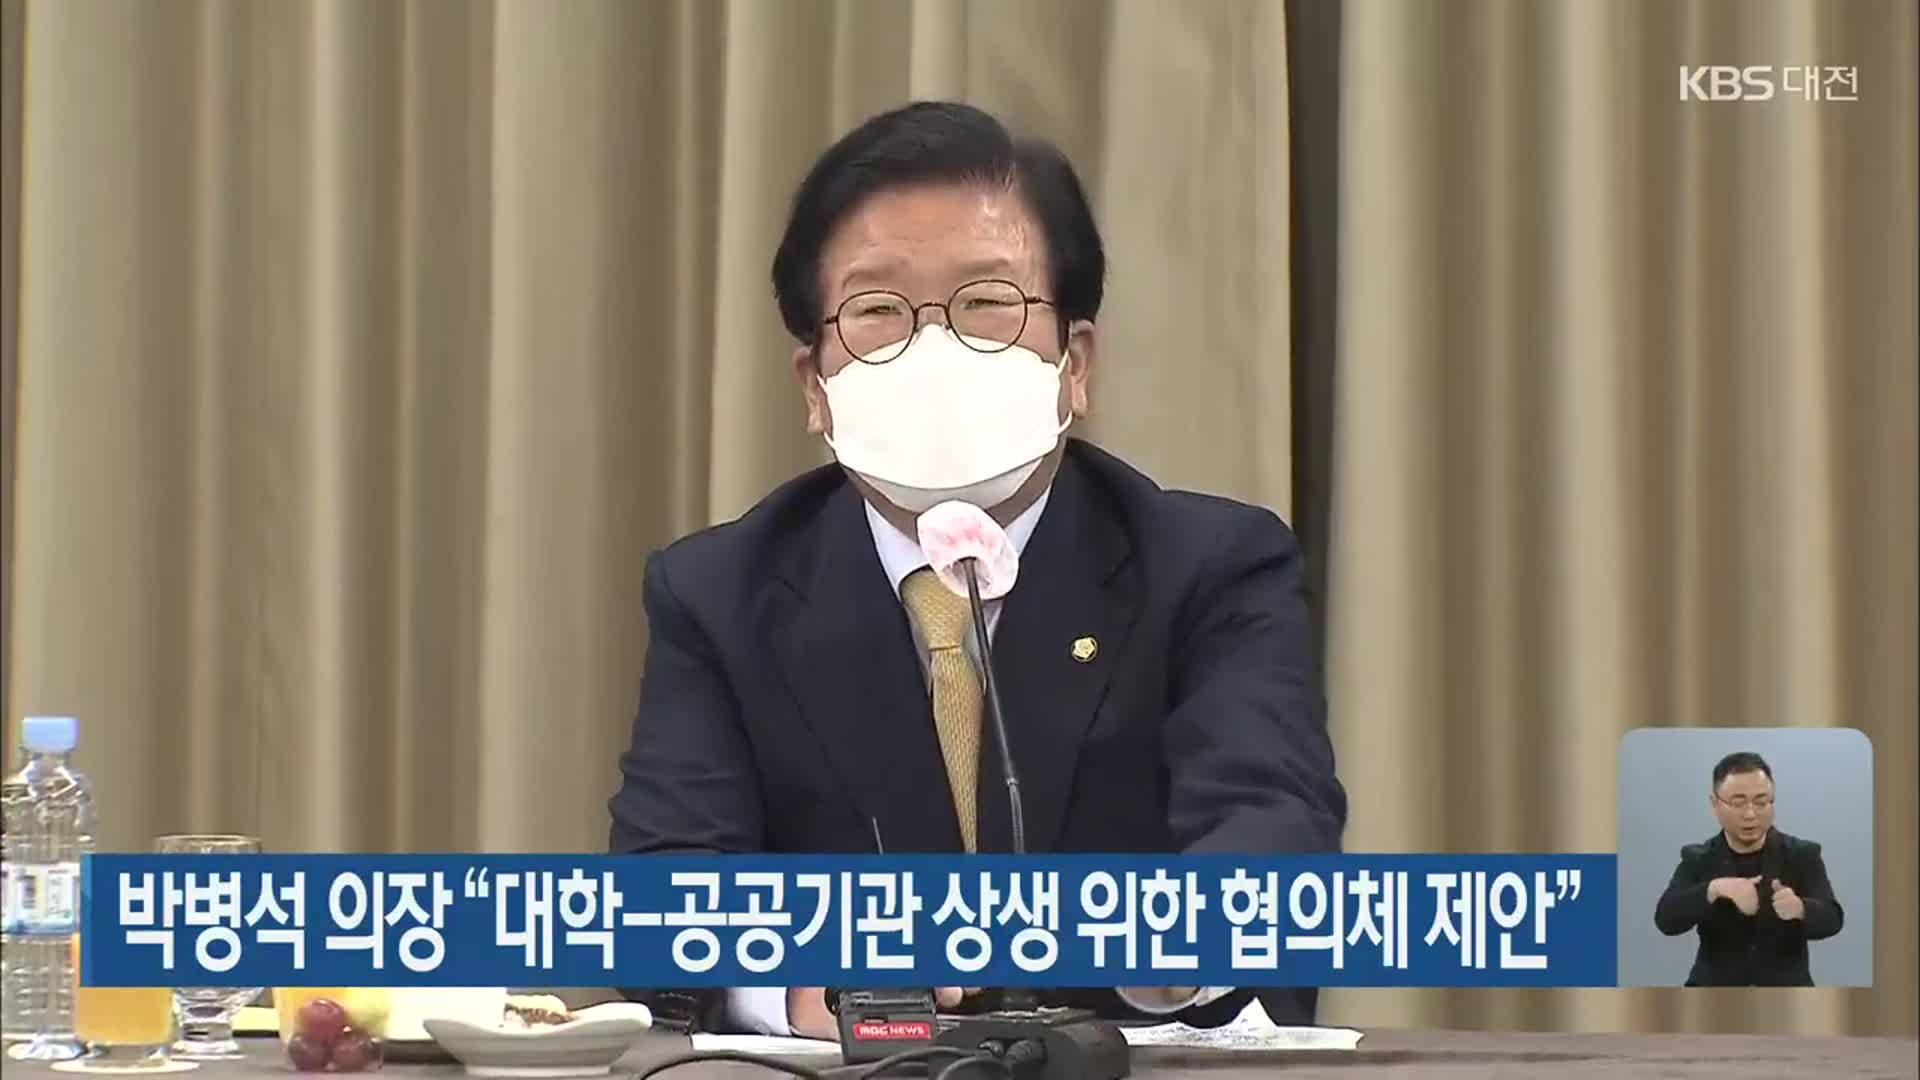 박병석 의장 “대학-공공기관 상생 위한 협의체 제안”